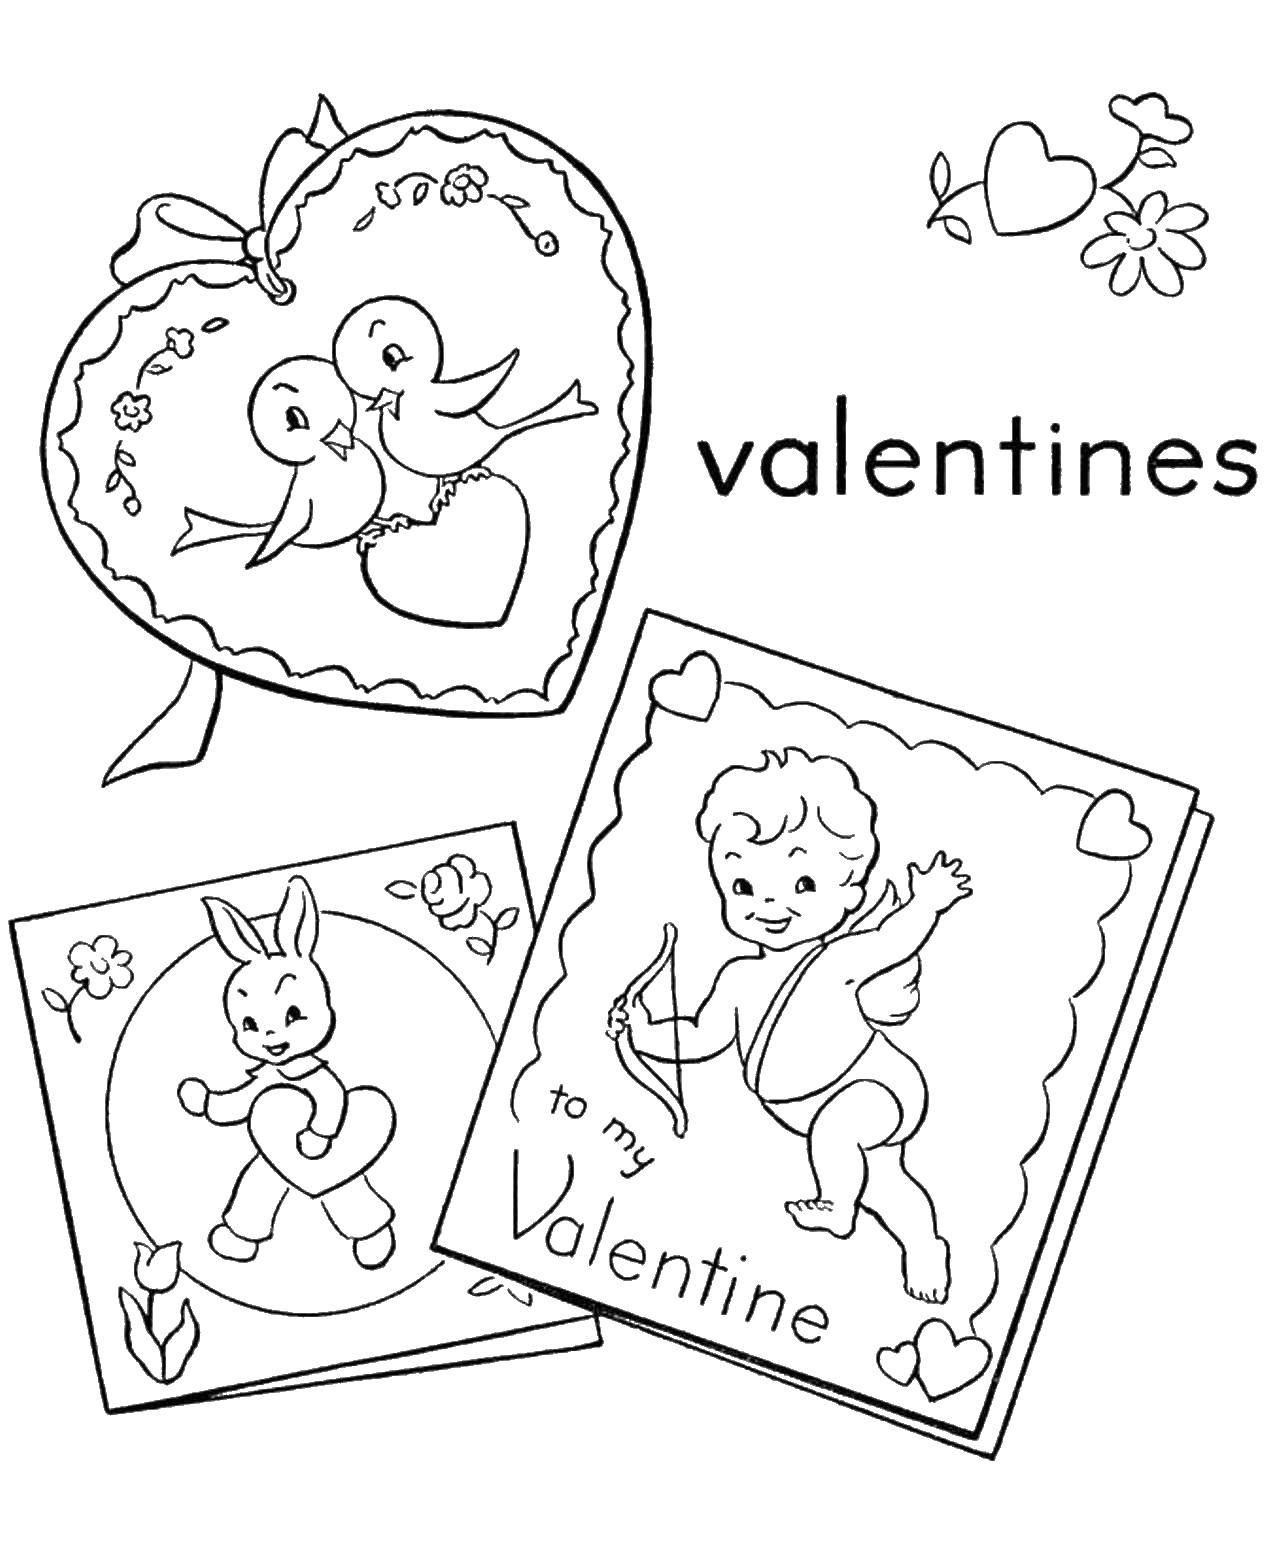 Coloring Открытки на день святого валентина. Category День святого валентина. Tags:  открытка, День святого валентина.